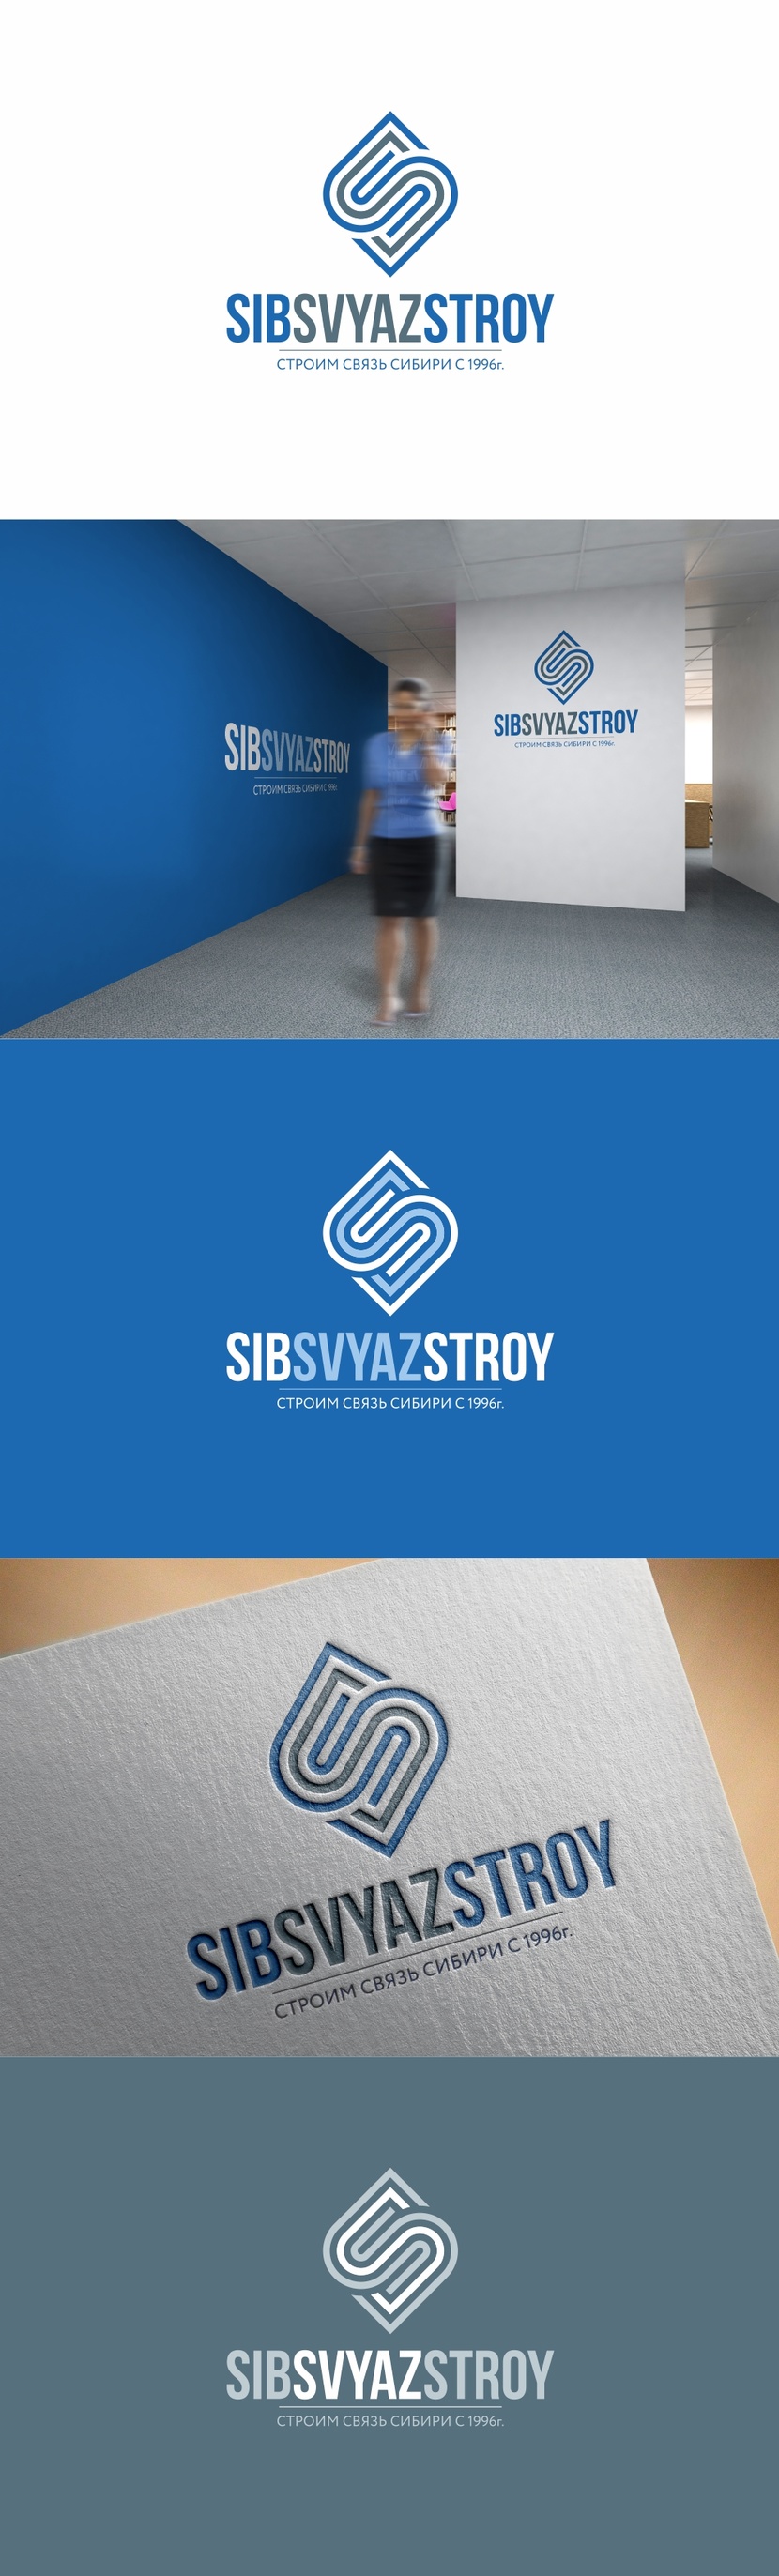 Разработка или ребрендинг существующего логотипа компании Сибсвязьстрой  -  автор Андрей Мартынович